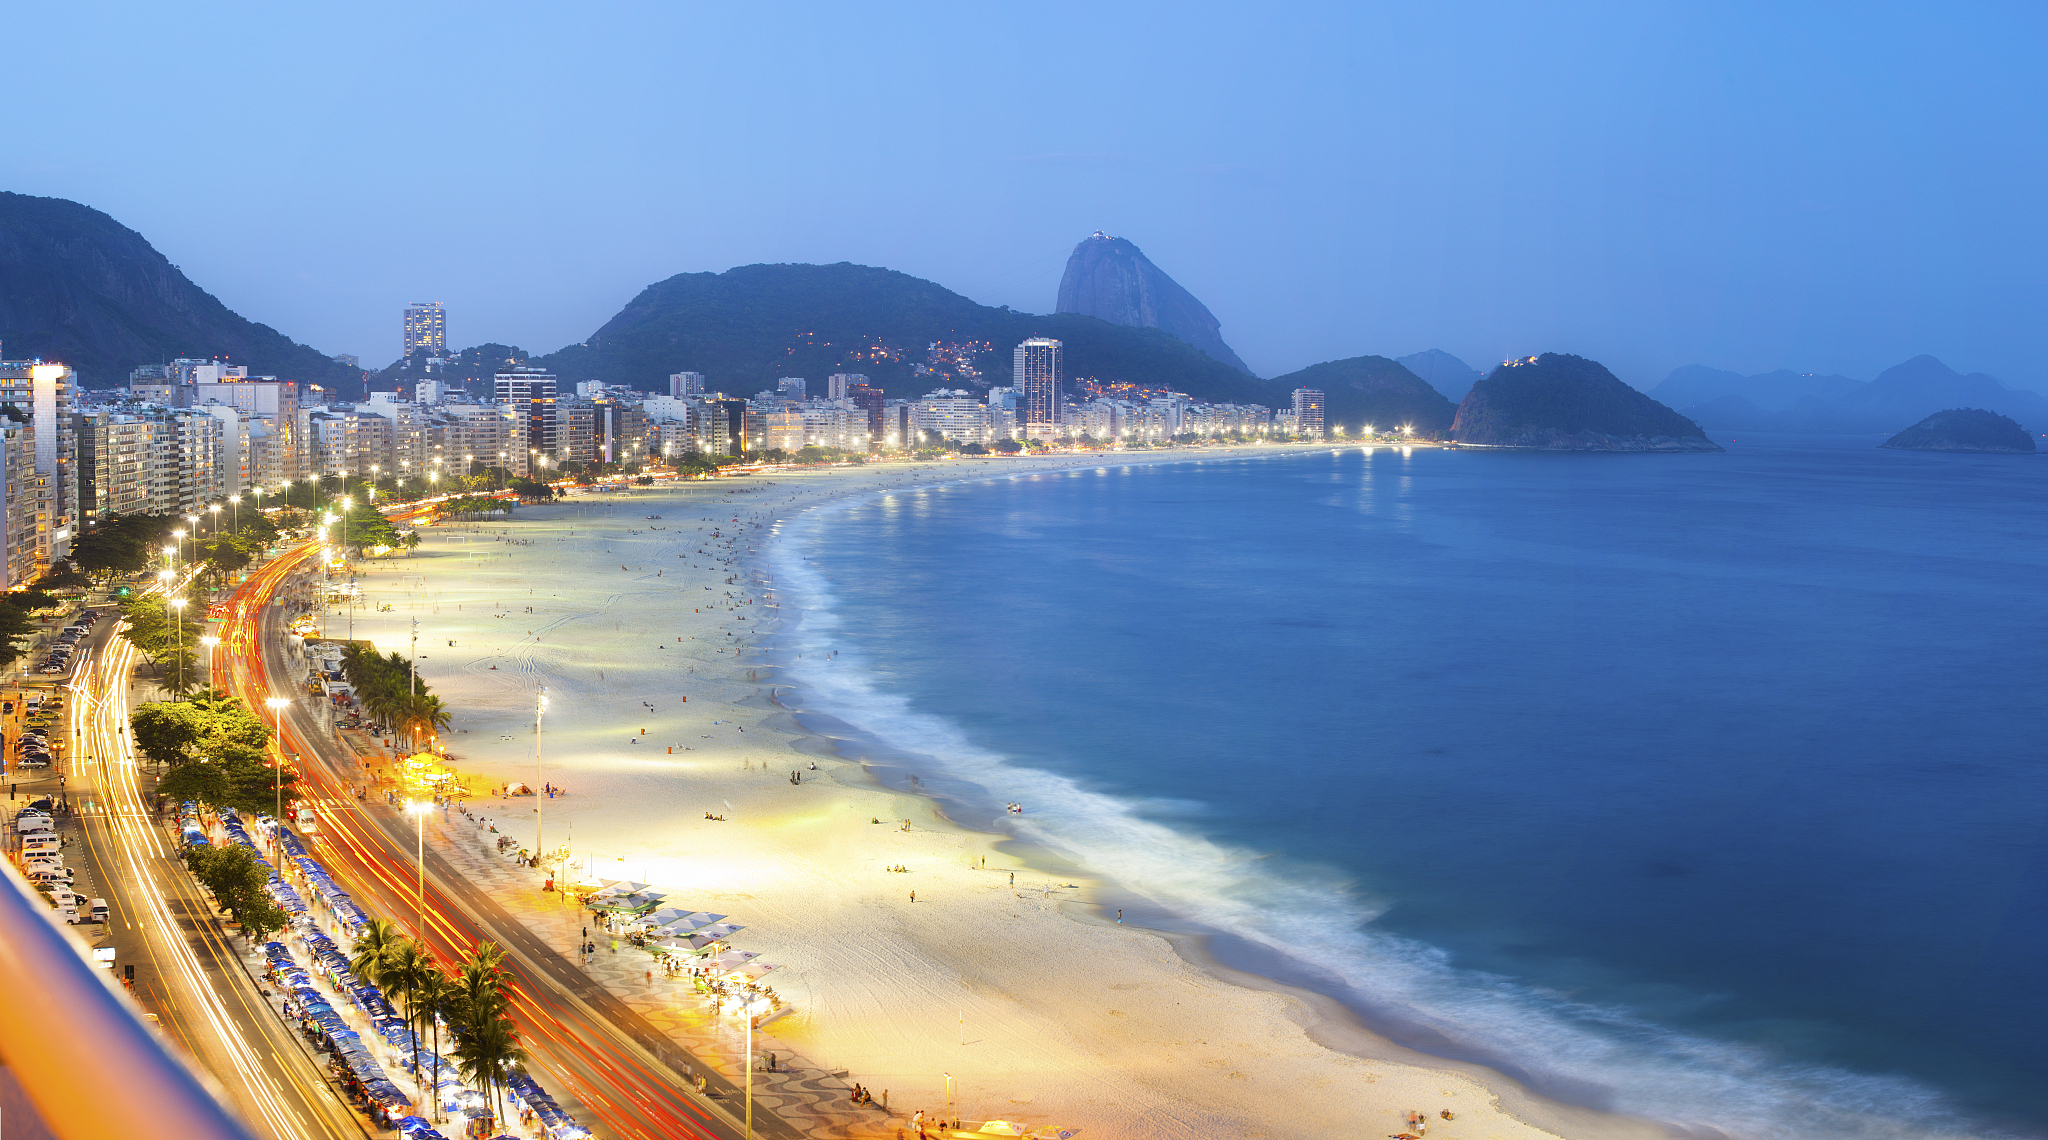 「巴西 瓦倫迪爾海灘」的圖片搜尋結果